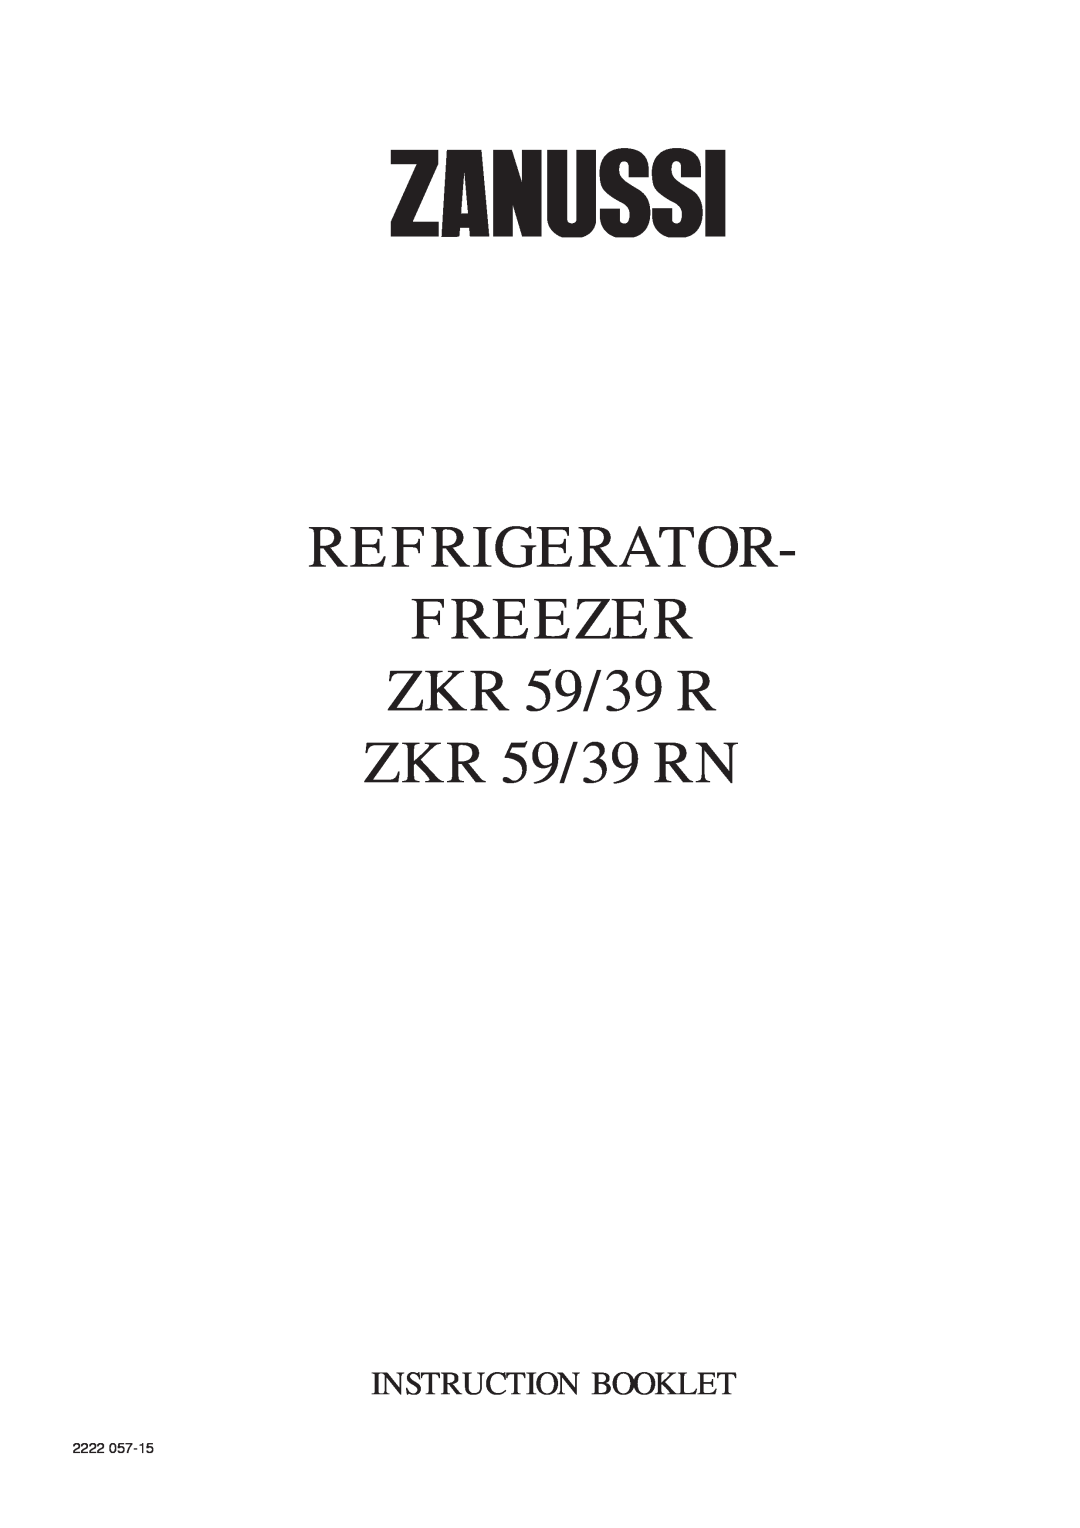 Zanussi manual REFRIGERATOR FREEZER ZKR 59/39 R ZKR 59/39 RN, Instruction Booklet, 2222 